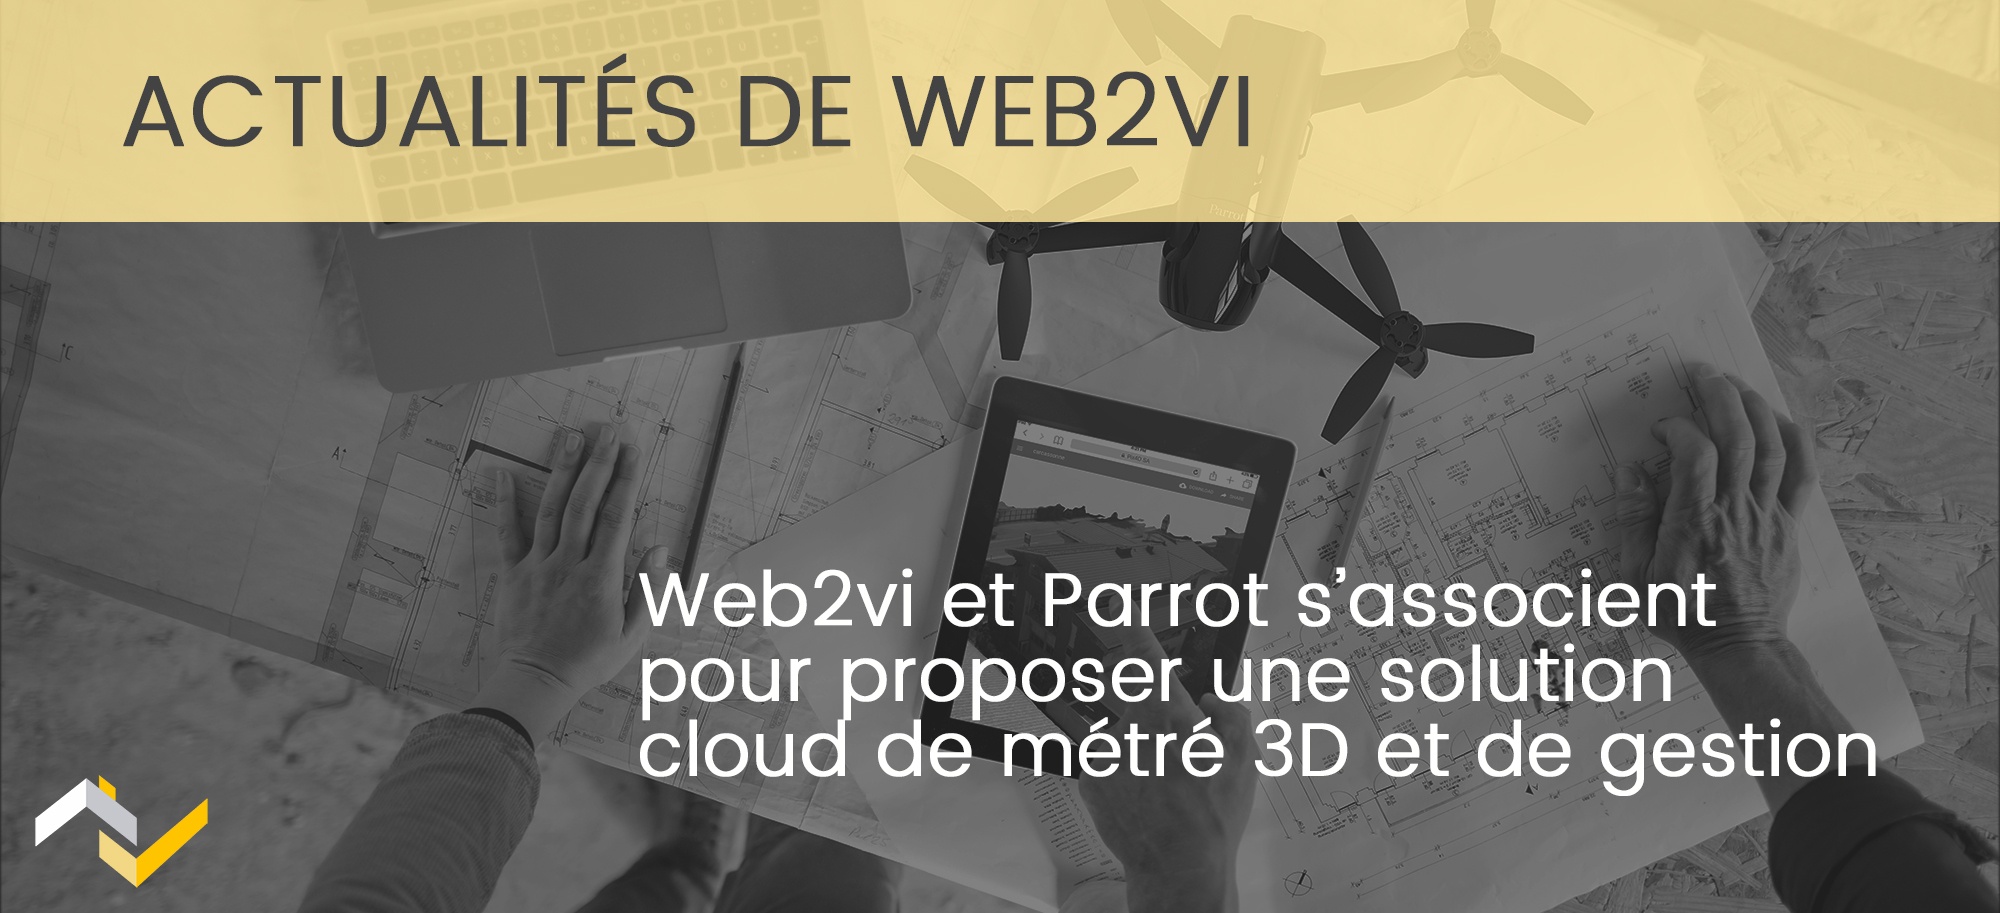 Web2vi et Parrot s'associent autour d'une solution cloud de métré 3D et de gestion